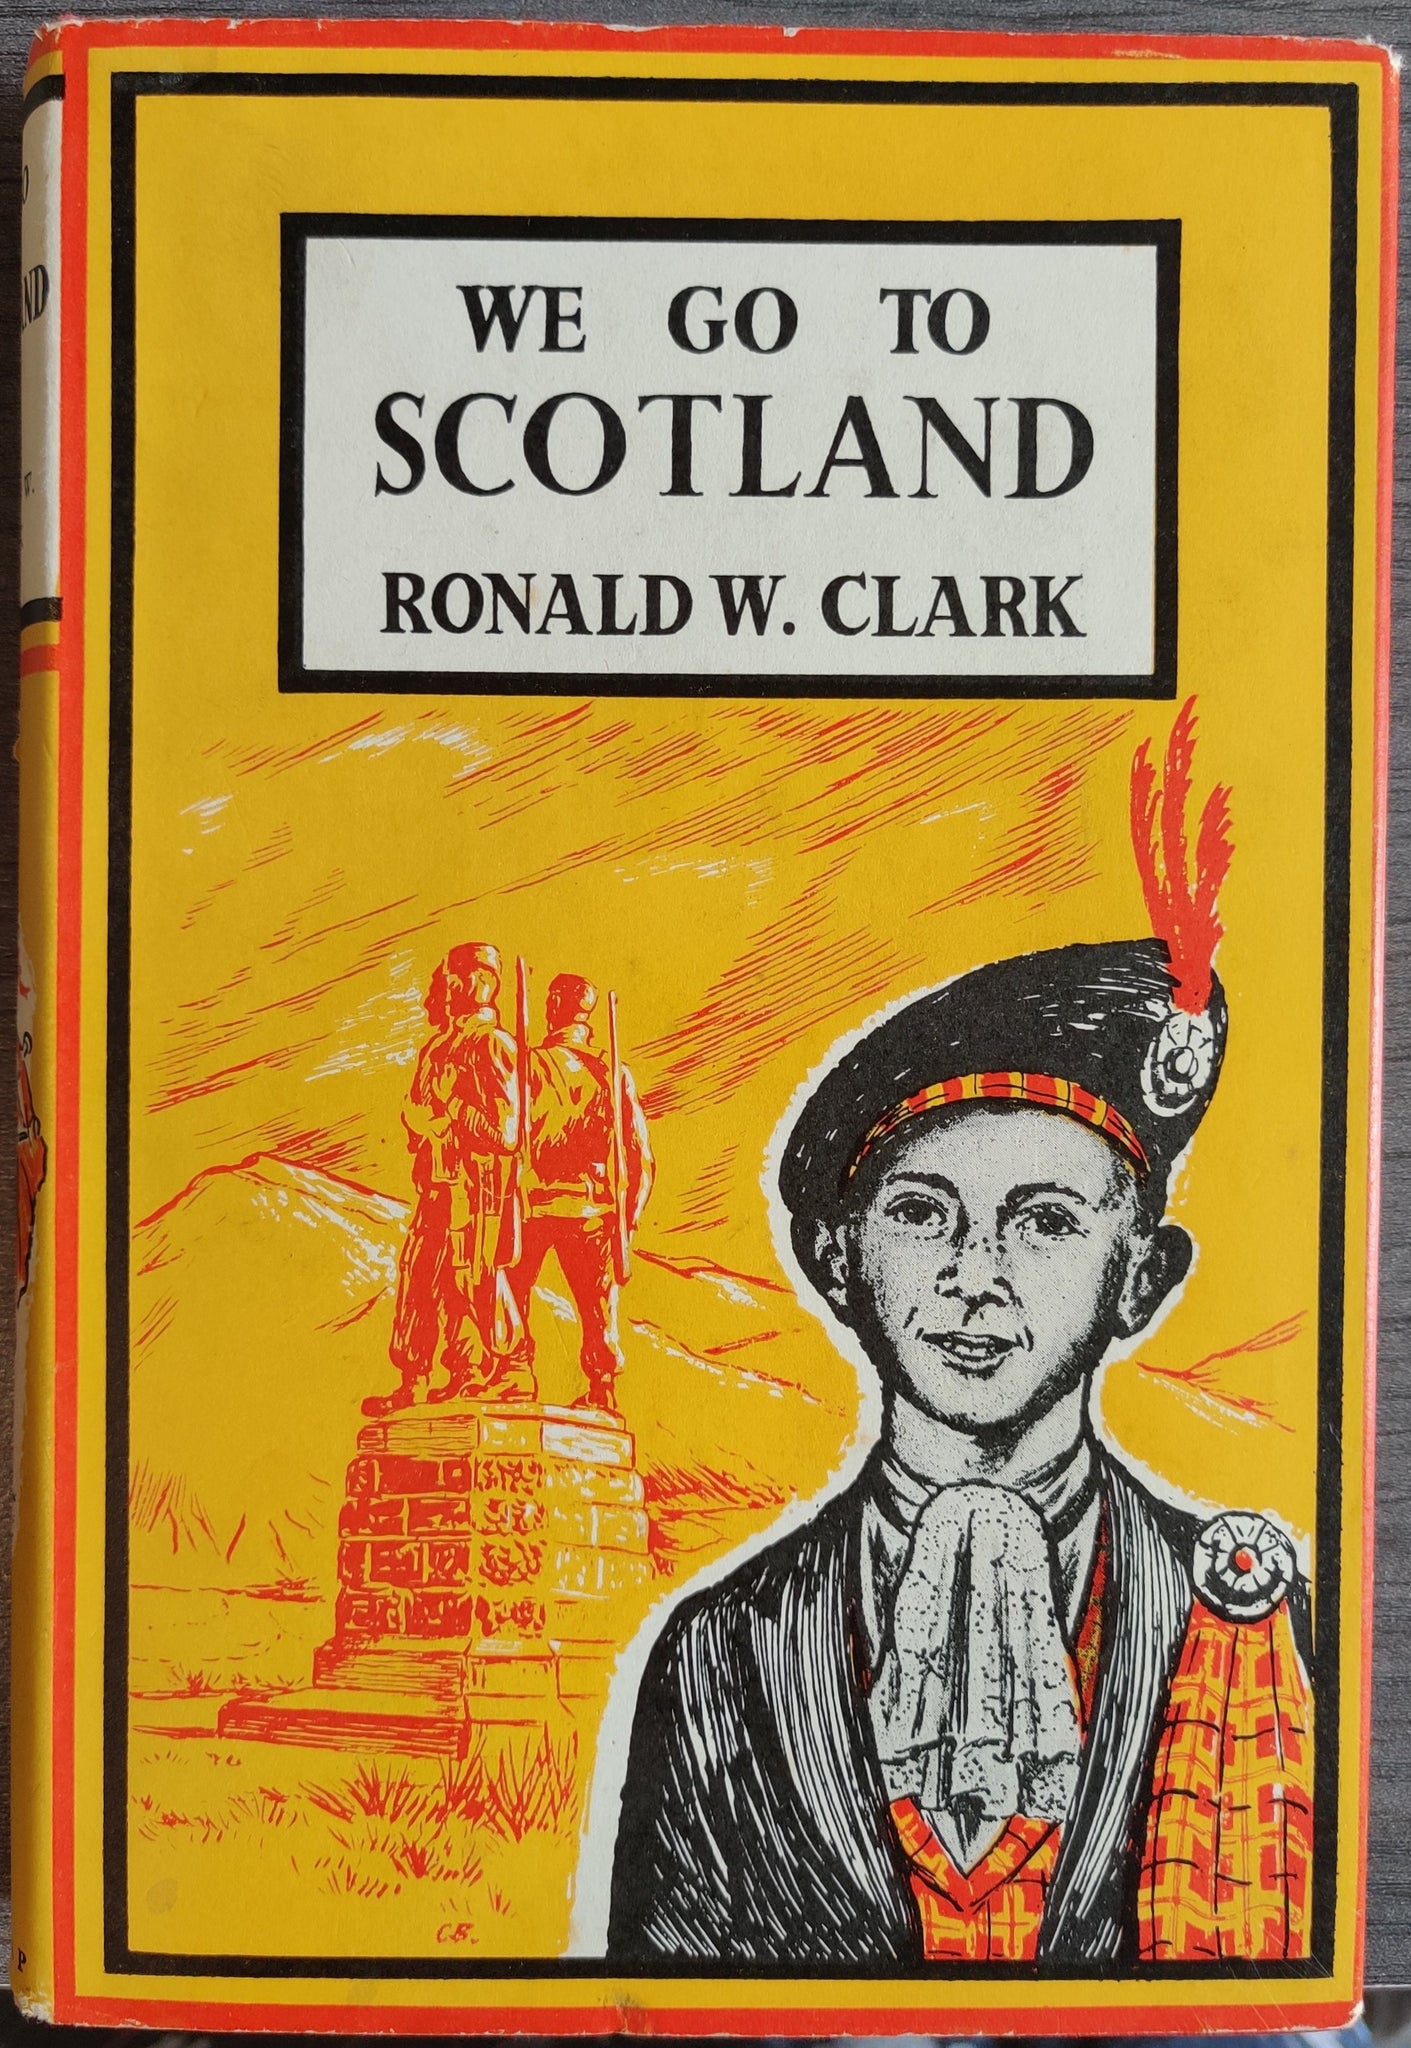 We Go To Scotland by Ronald W. Clark